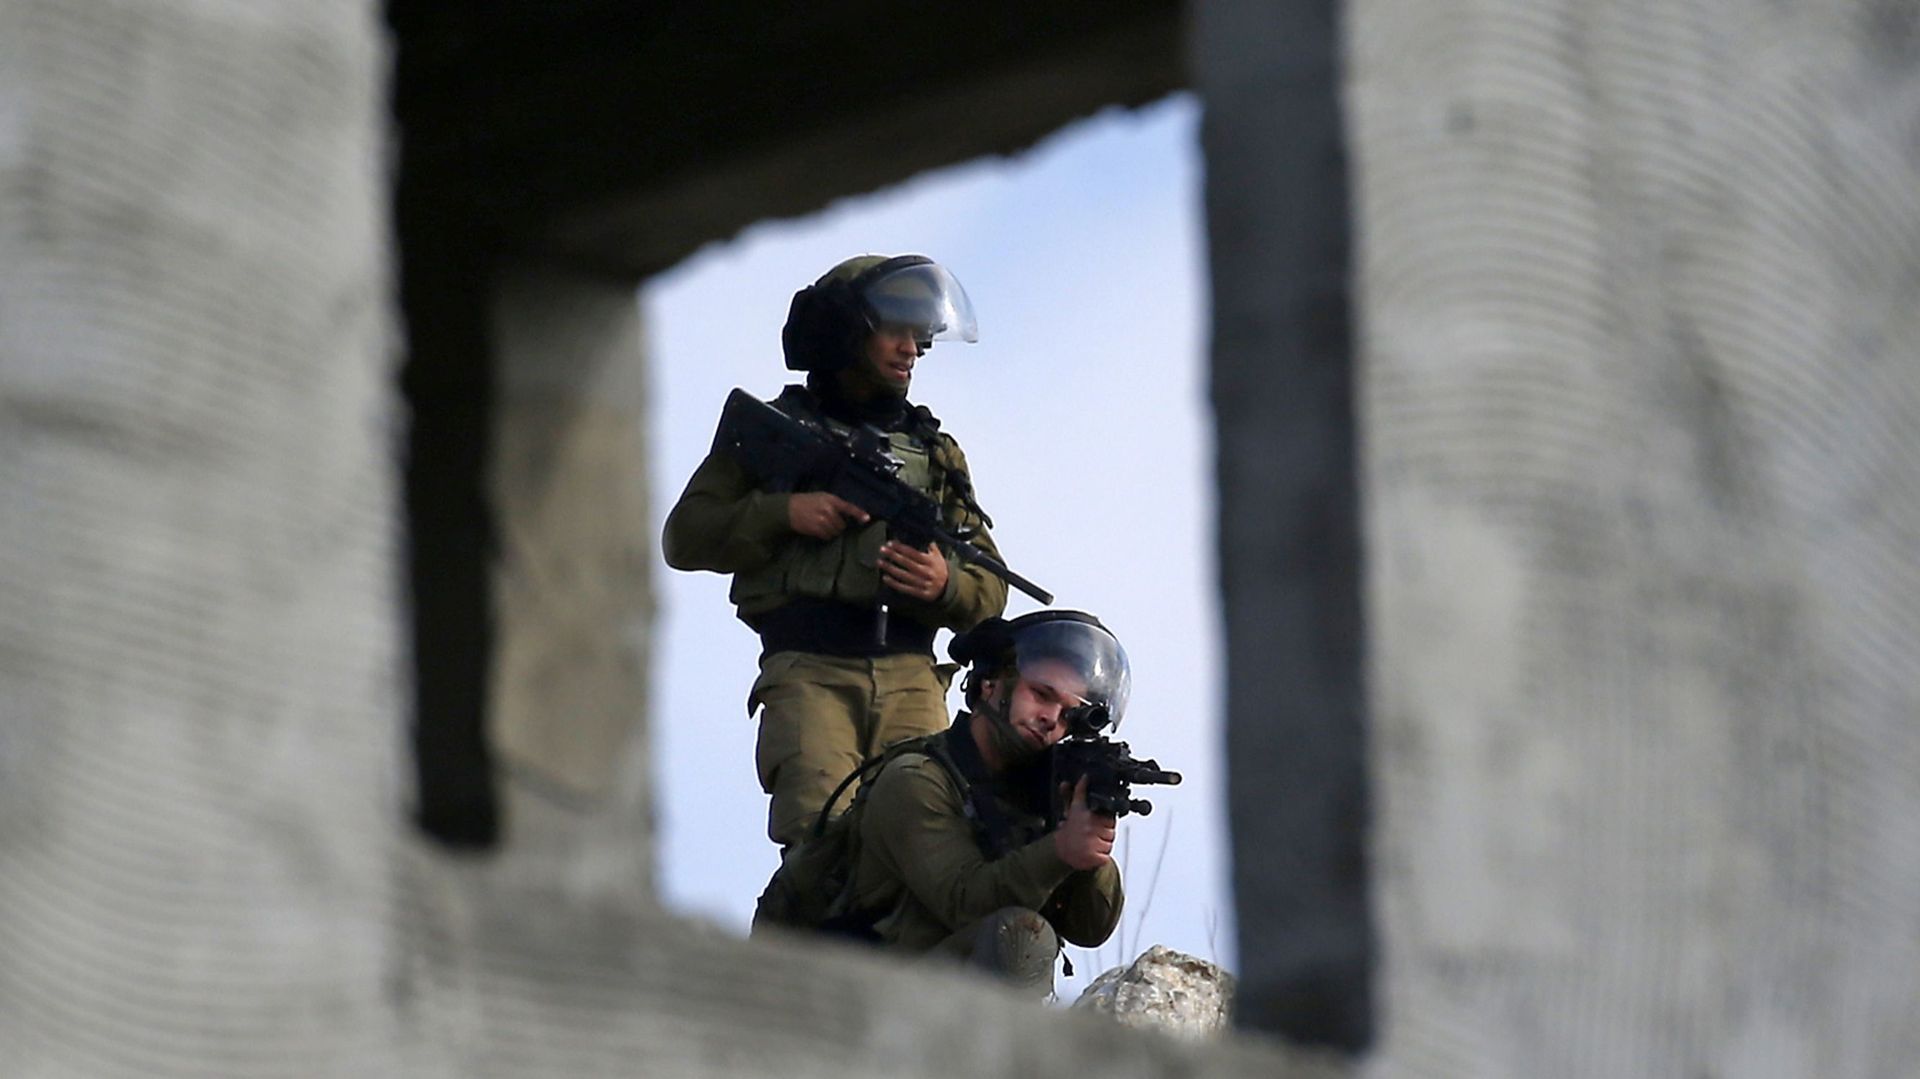 Tir de roquette depuis Gaza, présence militaire israélienne renforcée